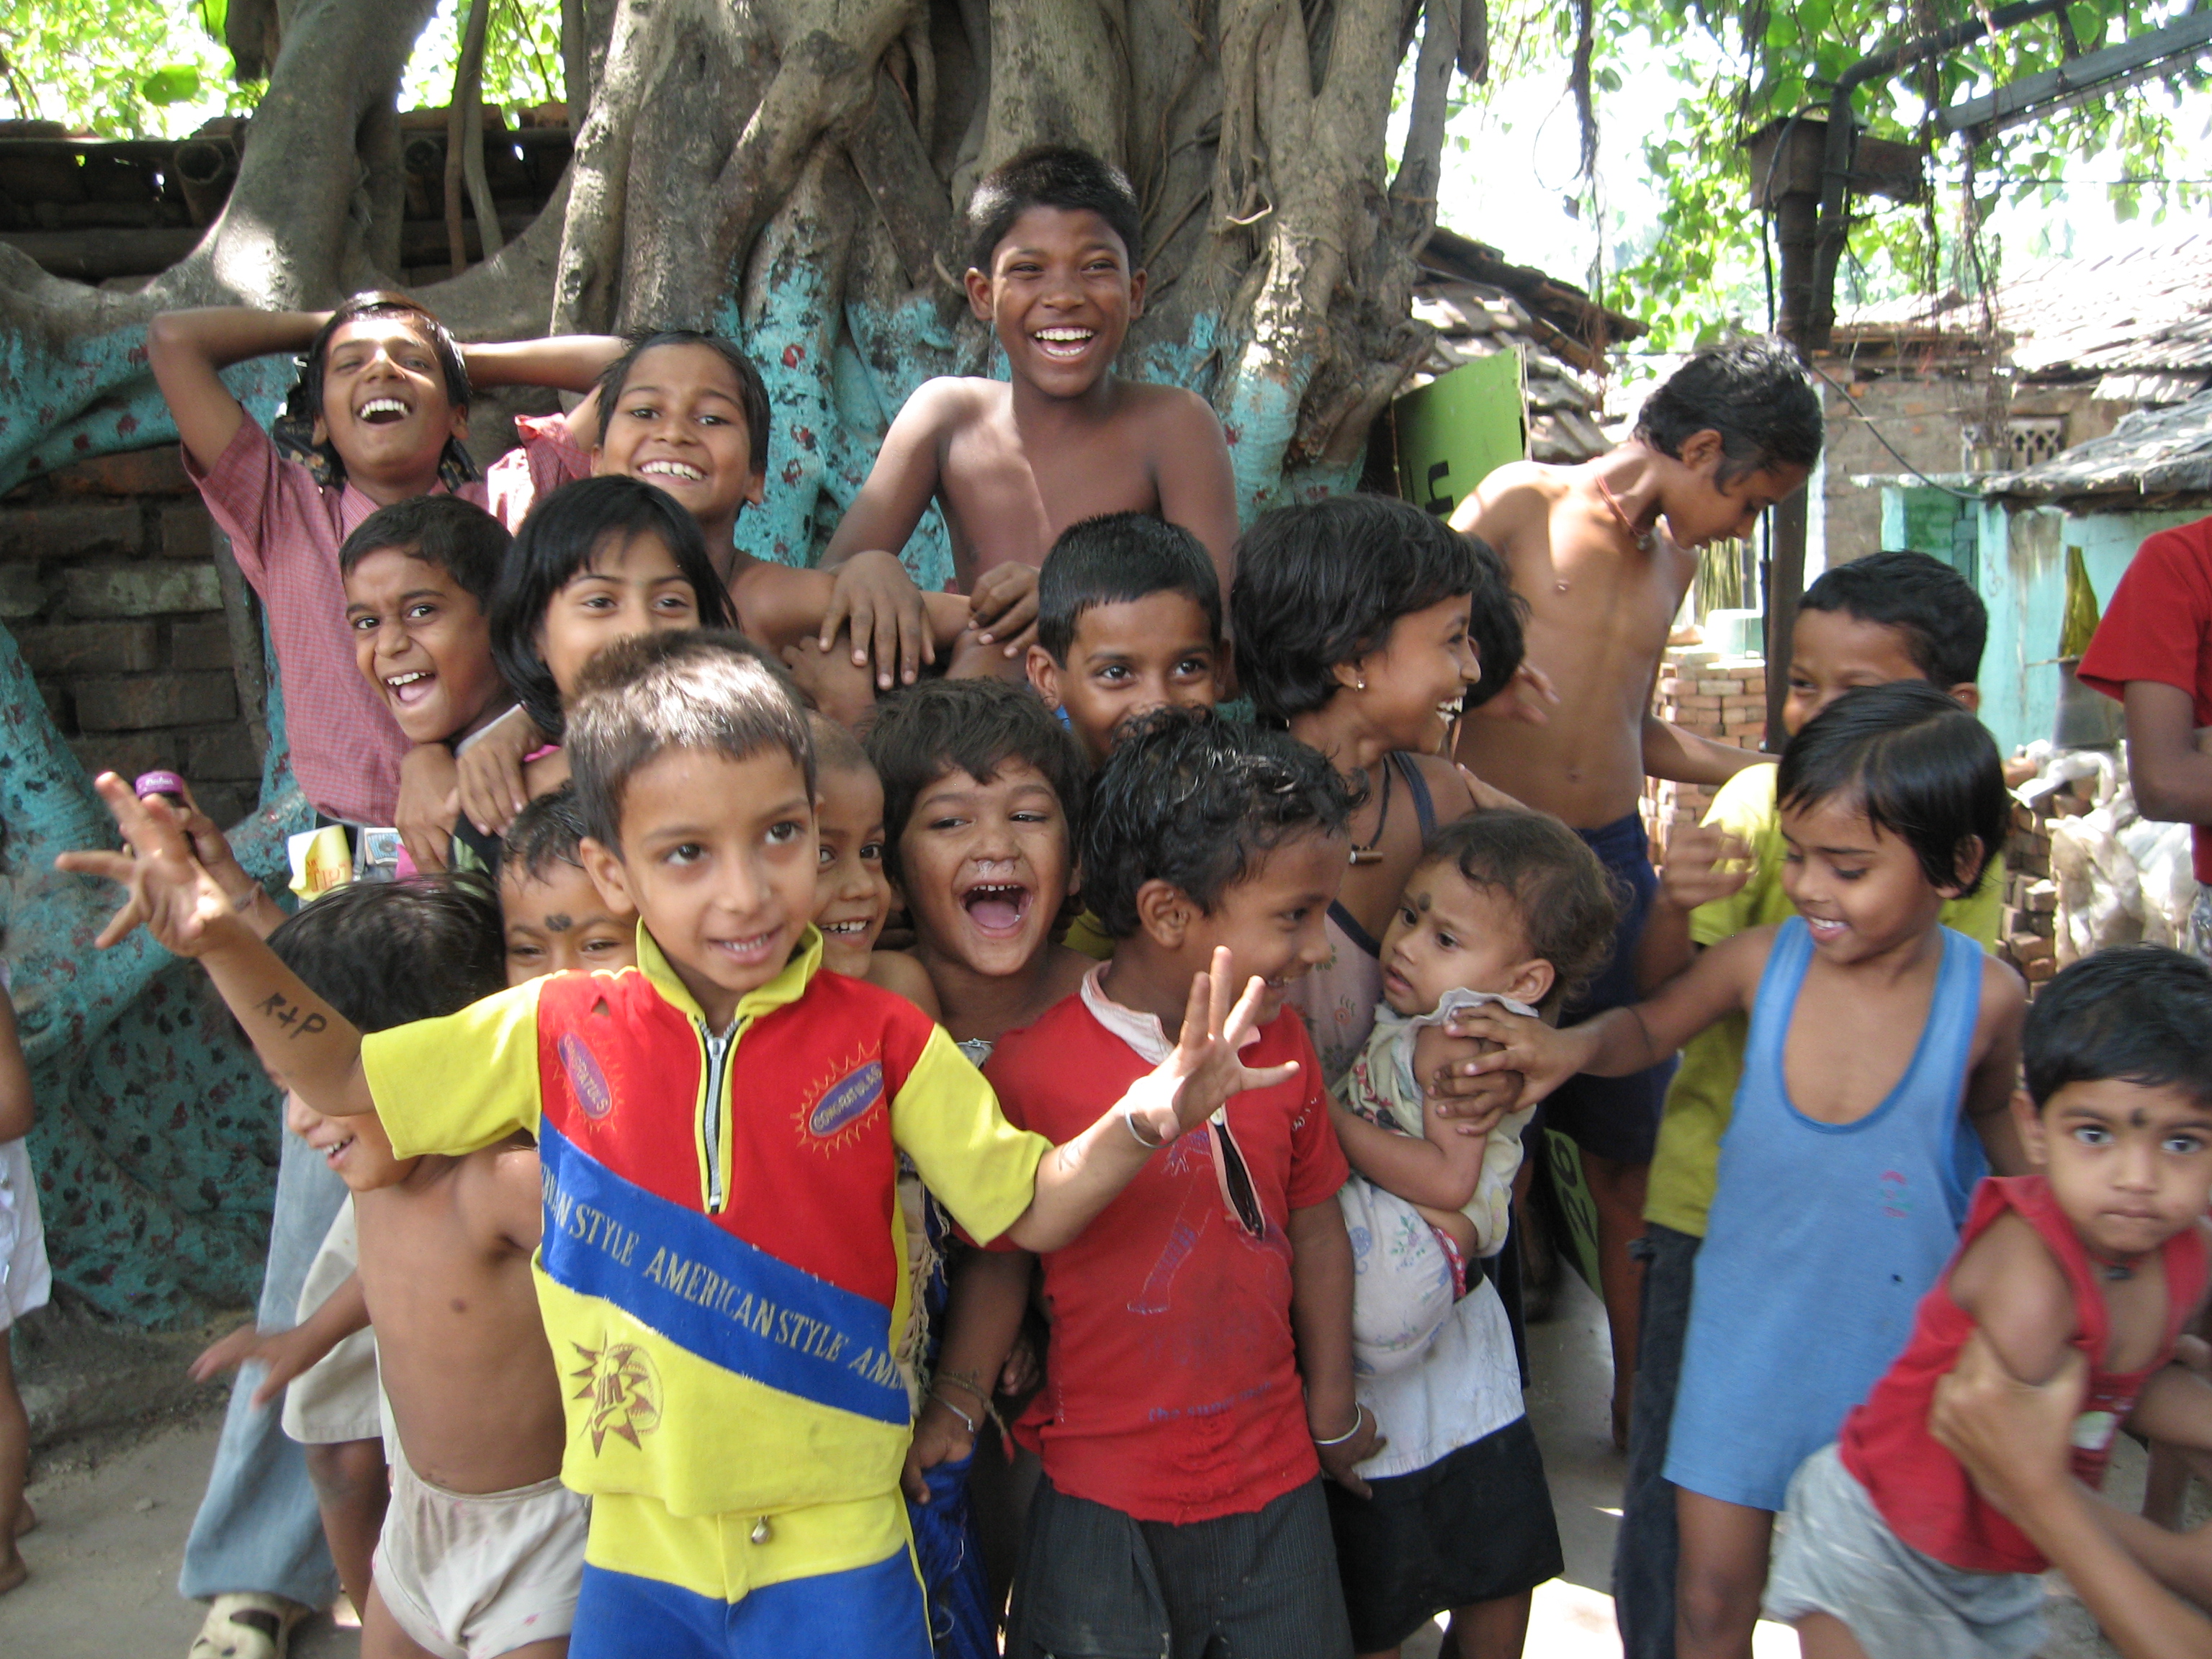 Crianças da Índia em cena do documentário "Happy". Foto Divulgação